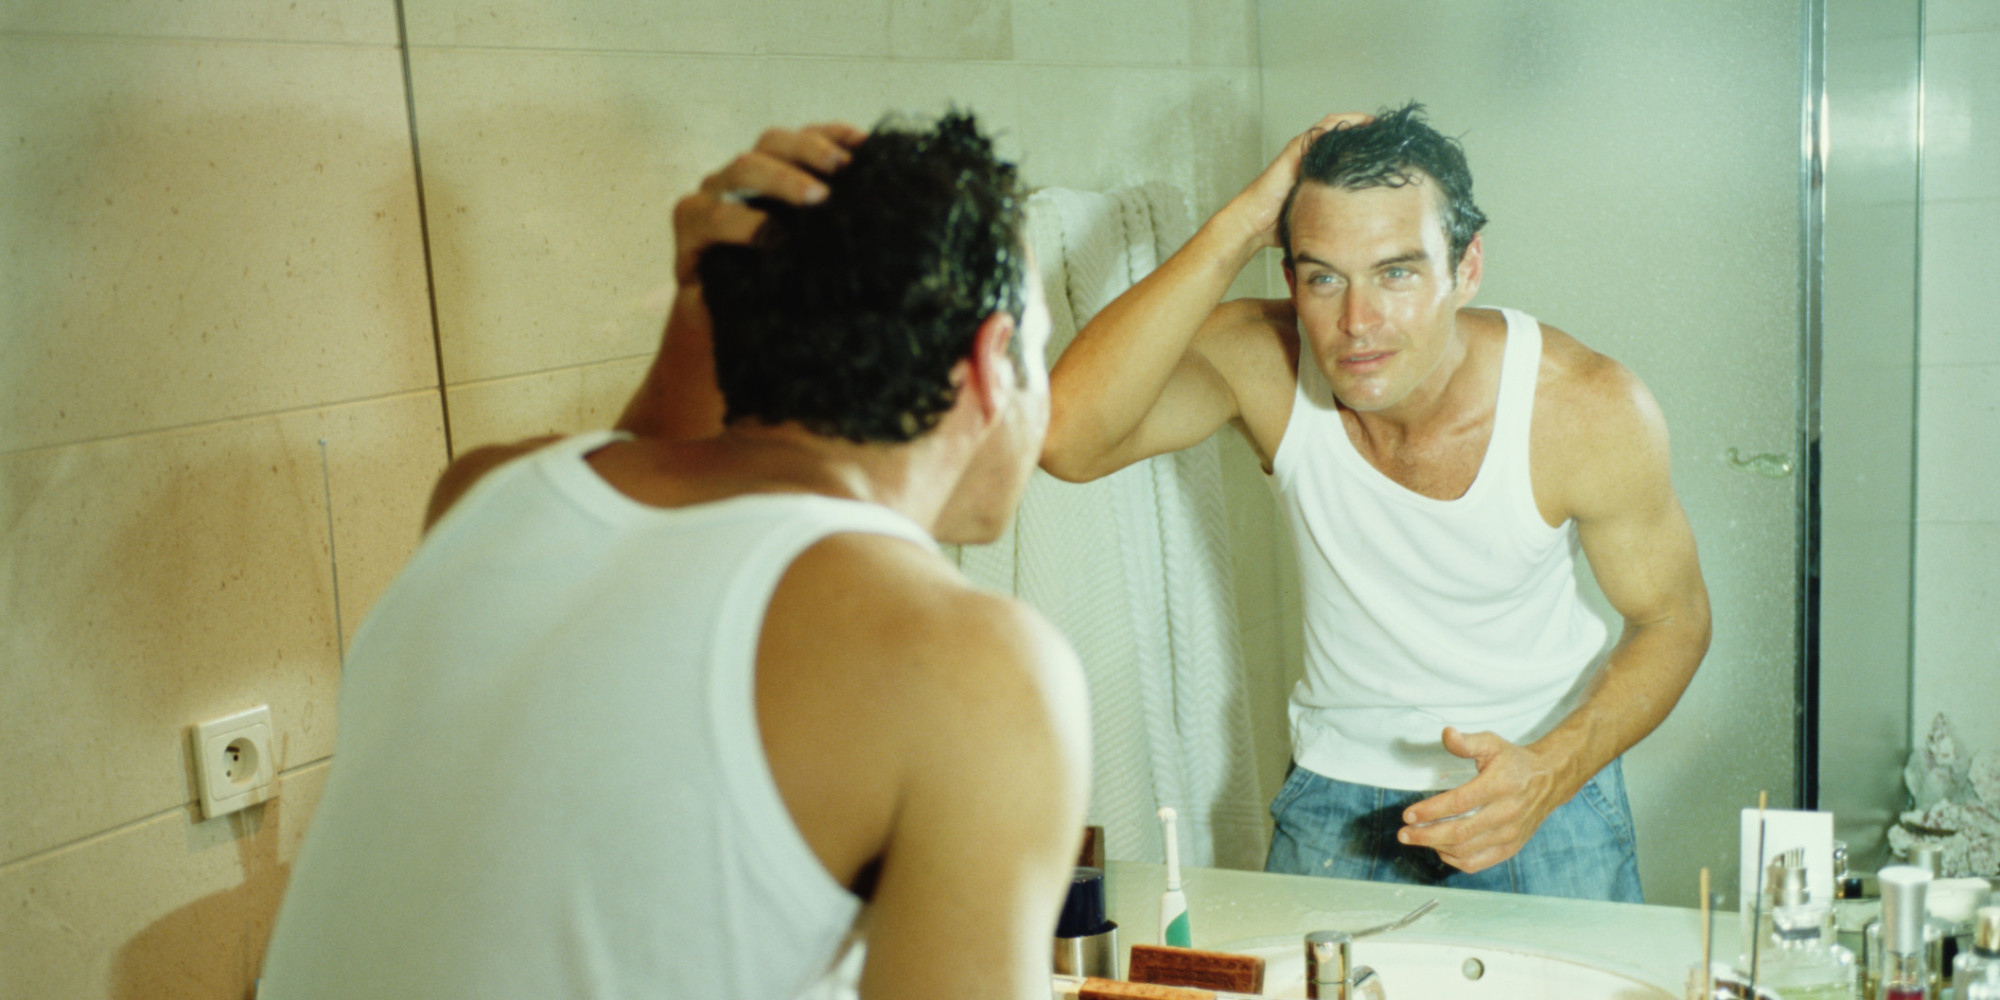 У мужчины не стоит что делать. Мужчика смотрим в зеркало. Мужчина в зеркале. Мужчина около зеркала. Человек перед зеркалом в ванной.